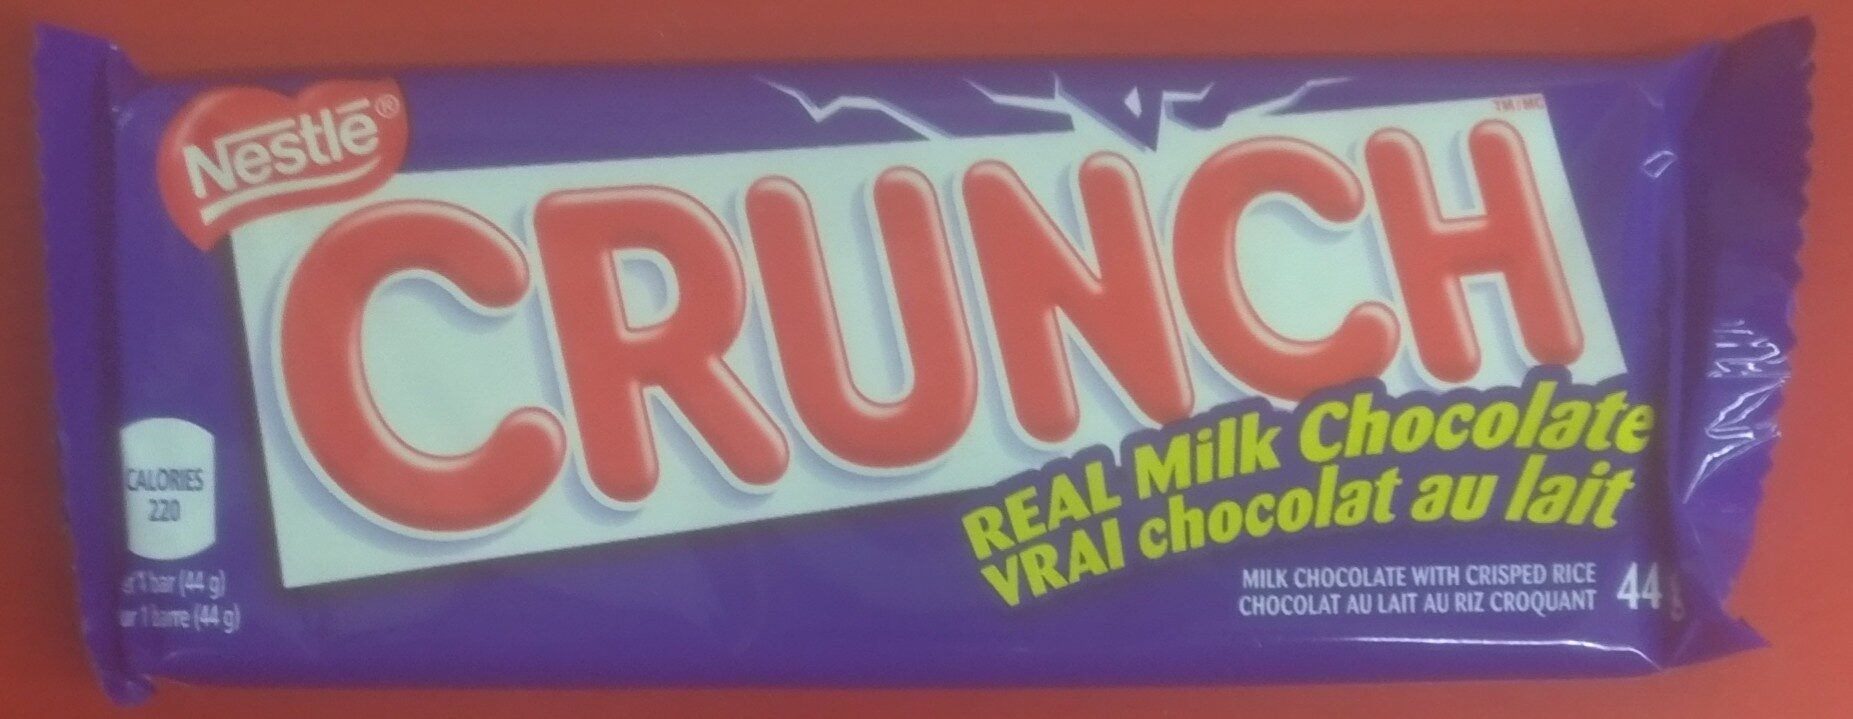 Crunch - Produit - en